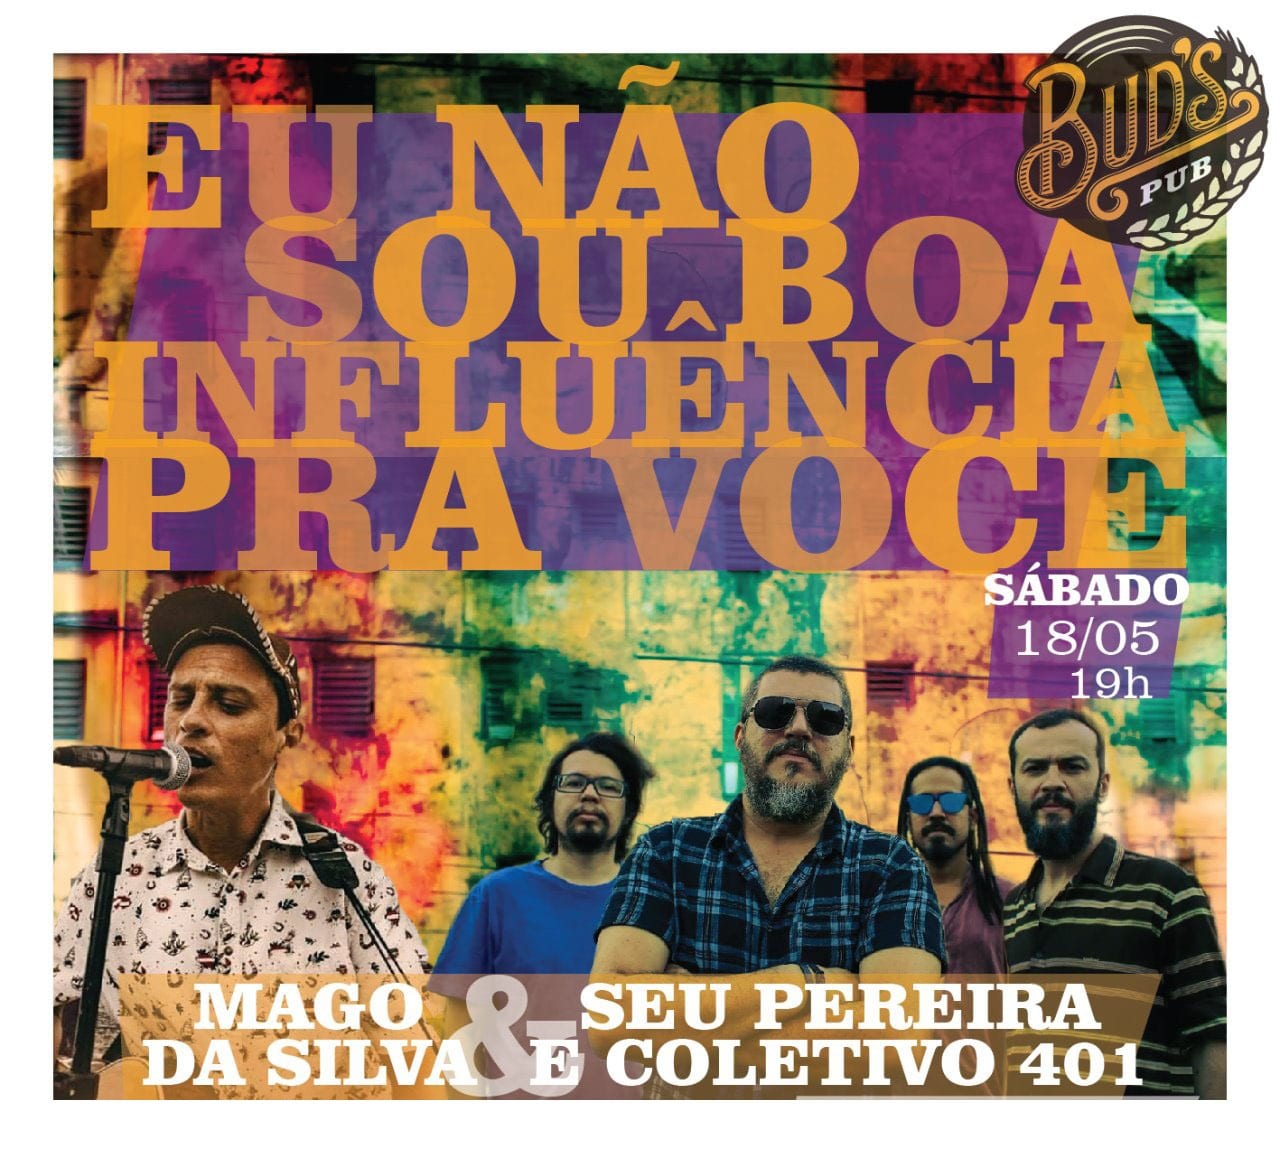 Mago da Silva e Seu Pereira fazem show no Bud's Pub no sábado